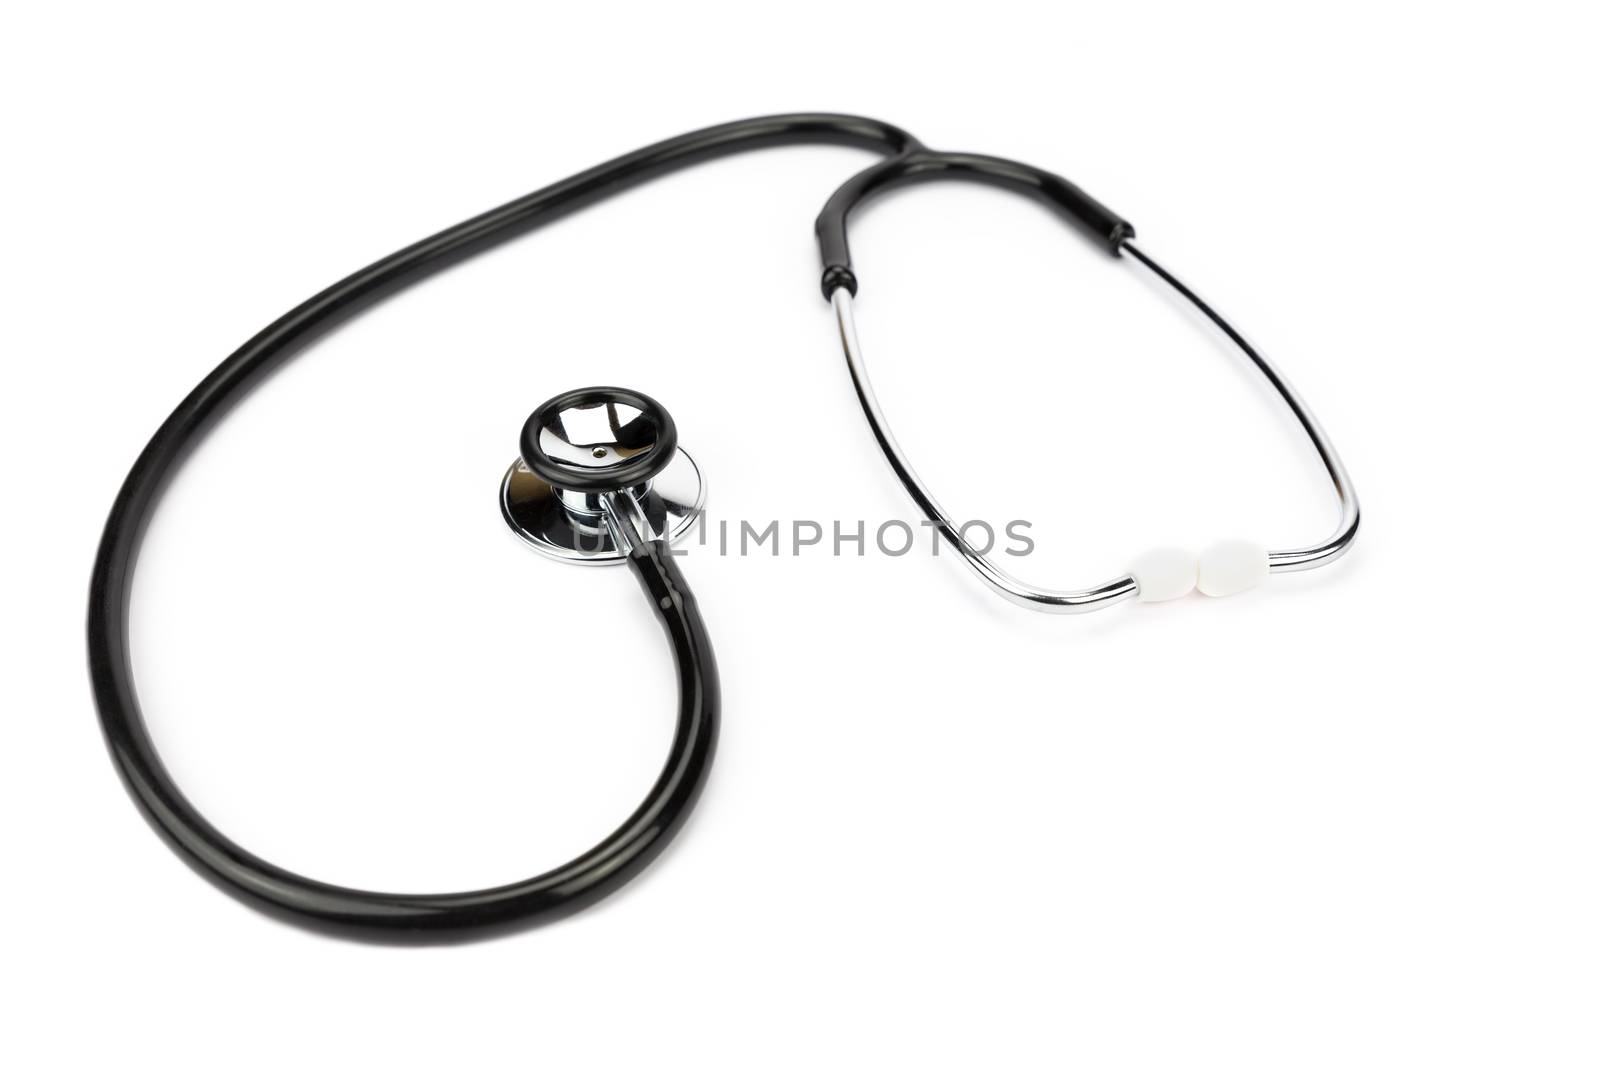 Black professional stethoscope lying isolated on white background